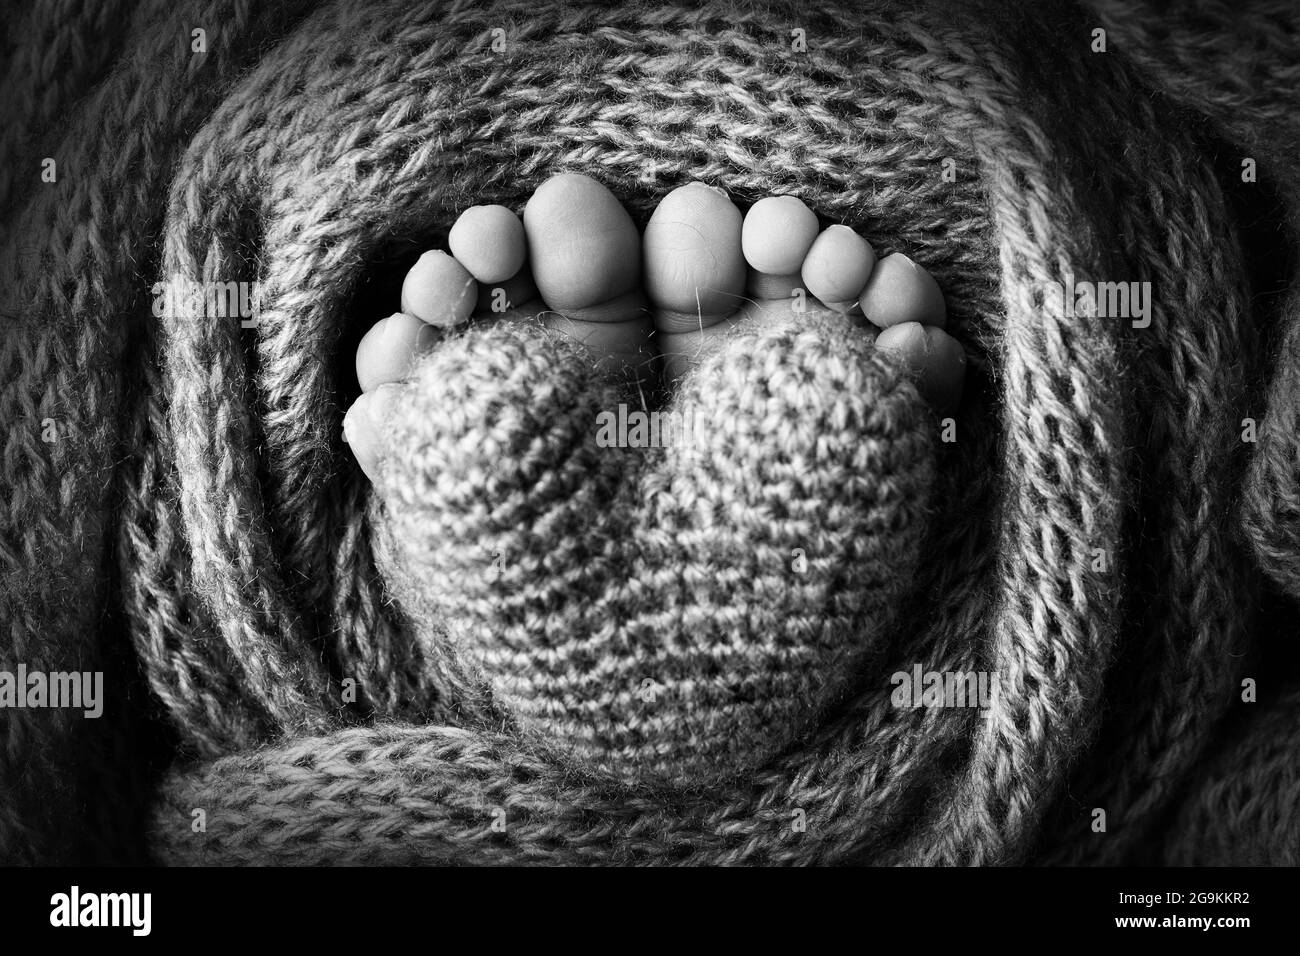 Los pies del bebé en una manta de lana azul claro y suave. Dedos de los pies pequeños. Corazón tejido en los dedos de los pies del bebé. Foto en blanco y negro. Foto de stock